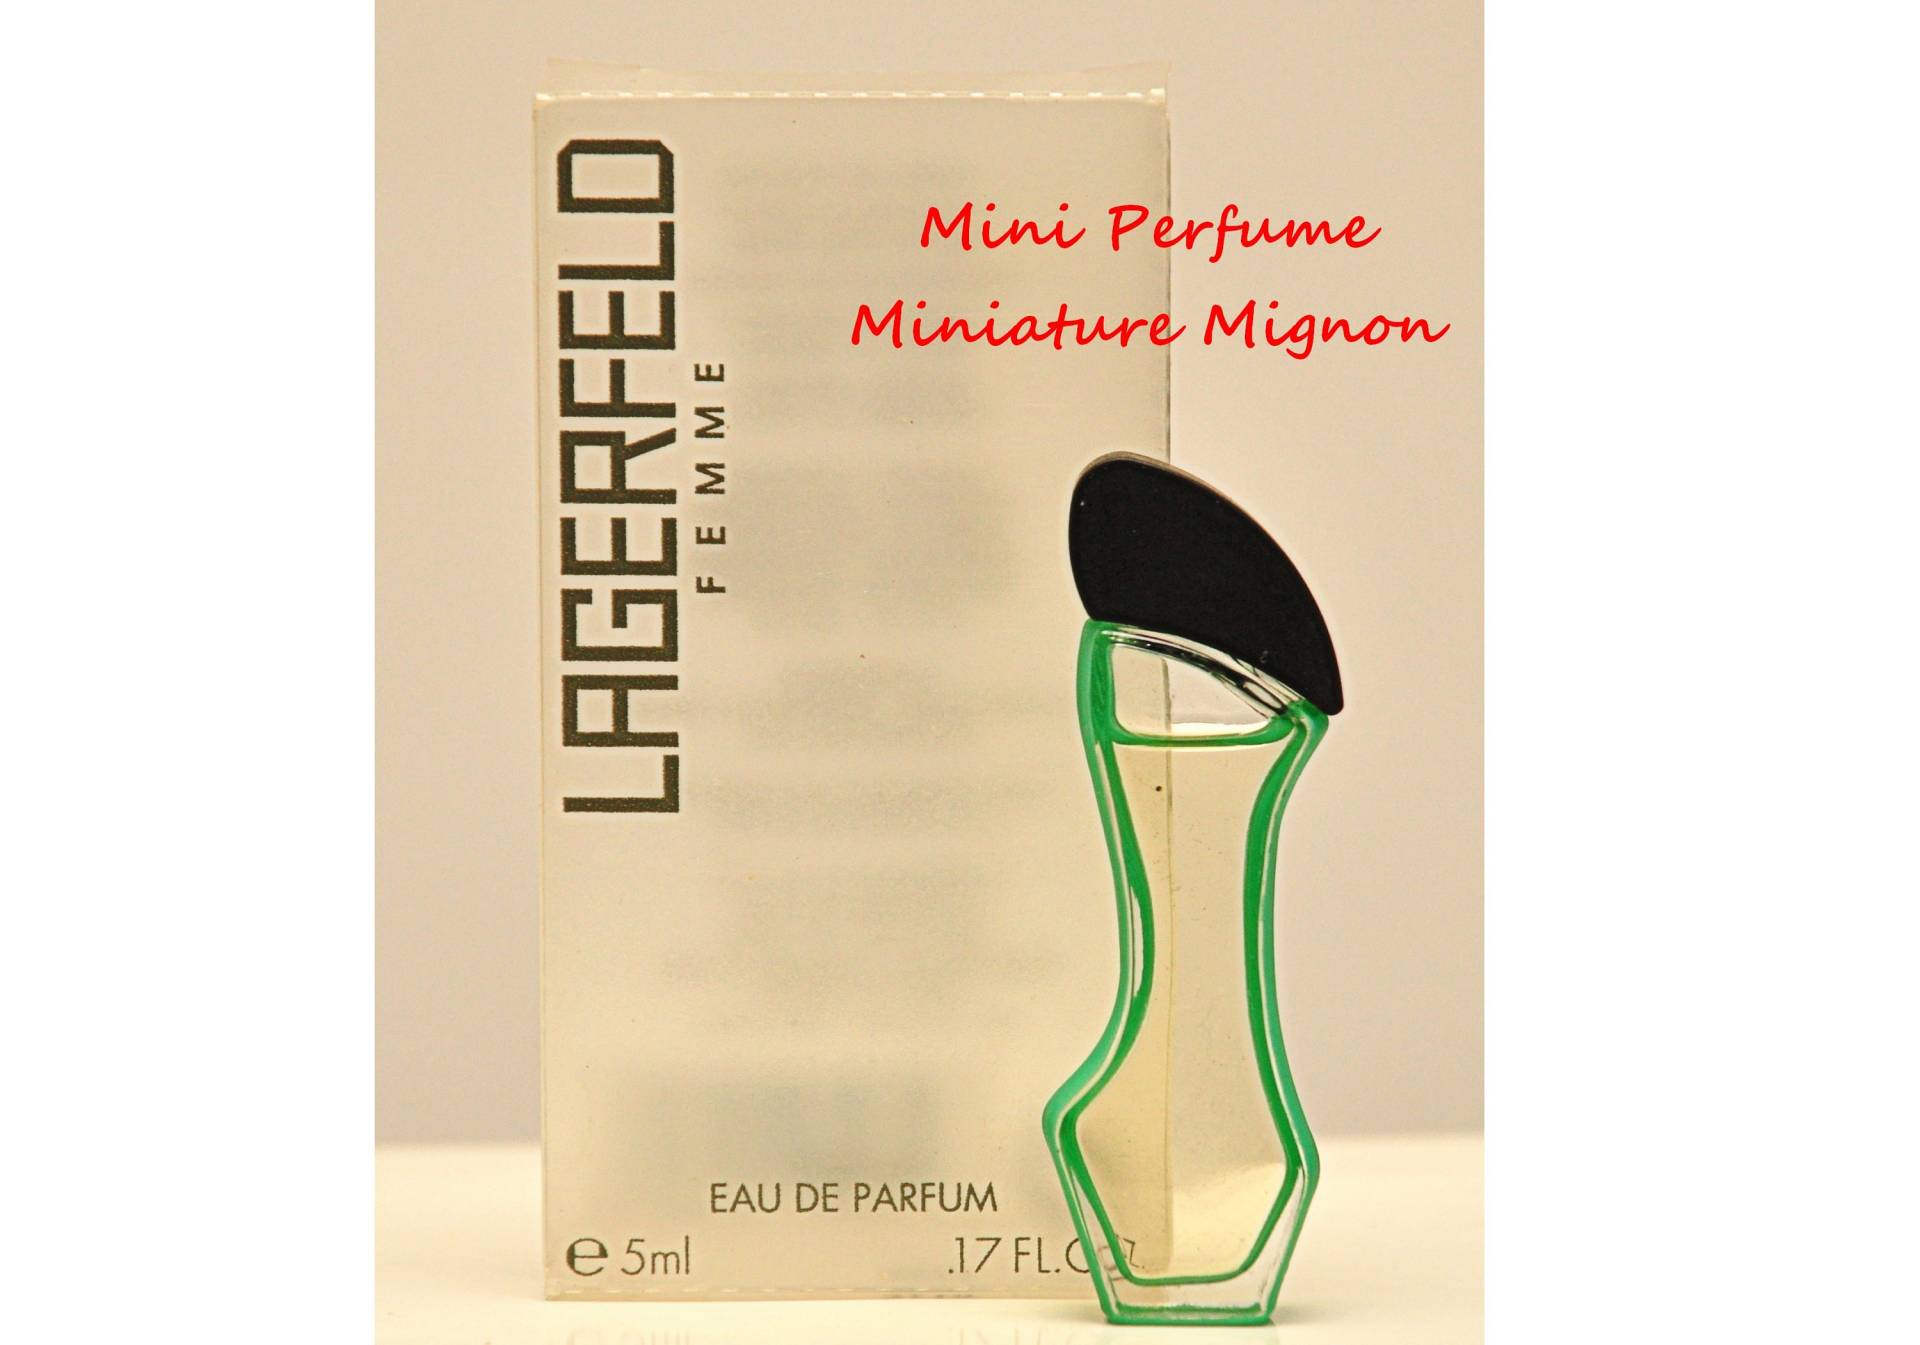 Lagerfeld Femme Von Karl Eau De Parfum Edp 5 Ml Miniatur Splash Non Spray Damenparfüm Sehr Selten Vintage 2000 von Etsy - YourVintagePerfume